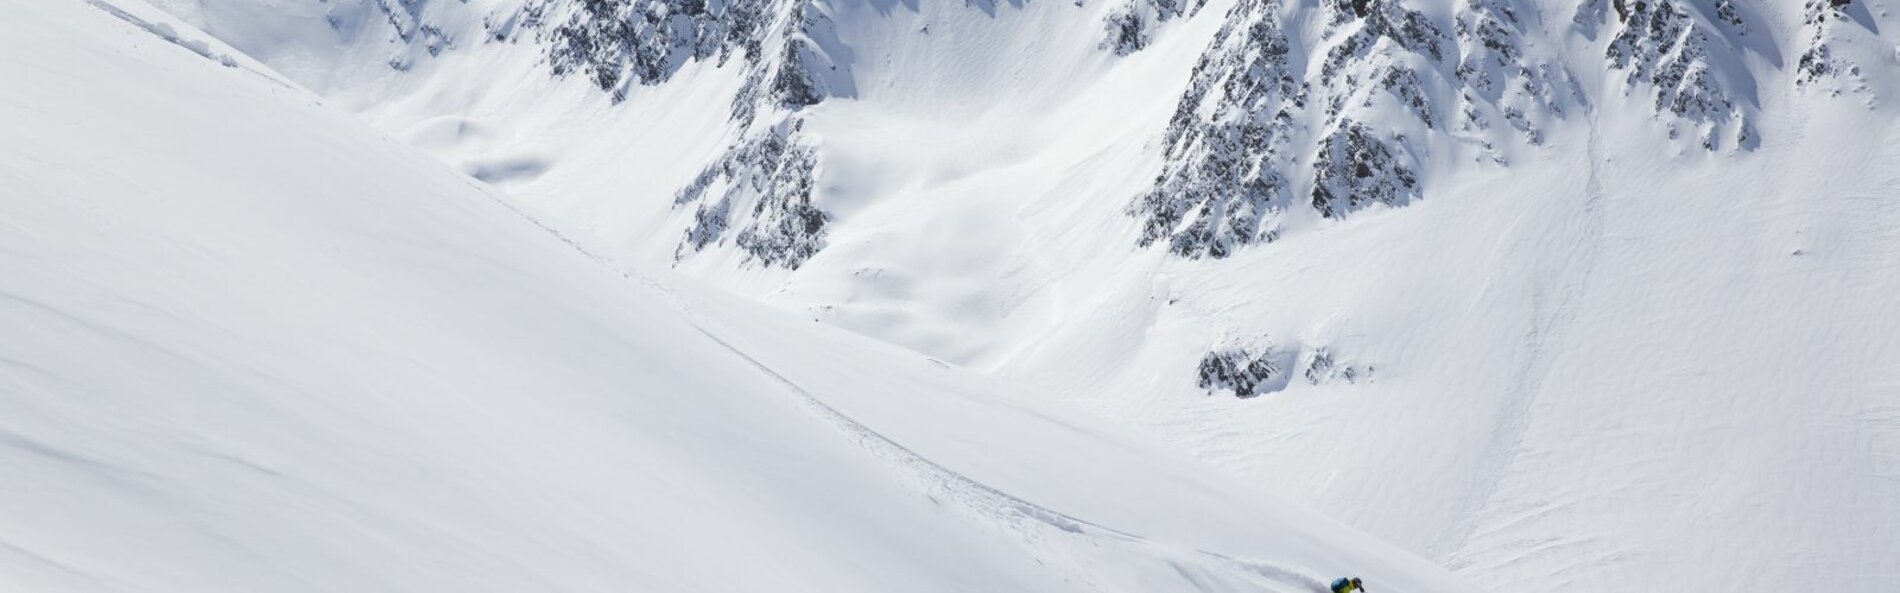 Schneebedeckte Berge mit Skifahrer